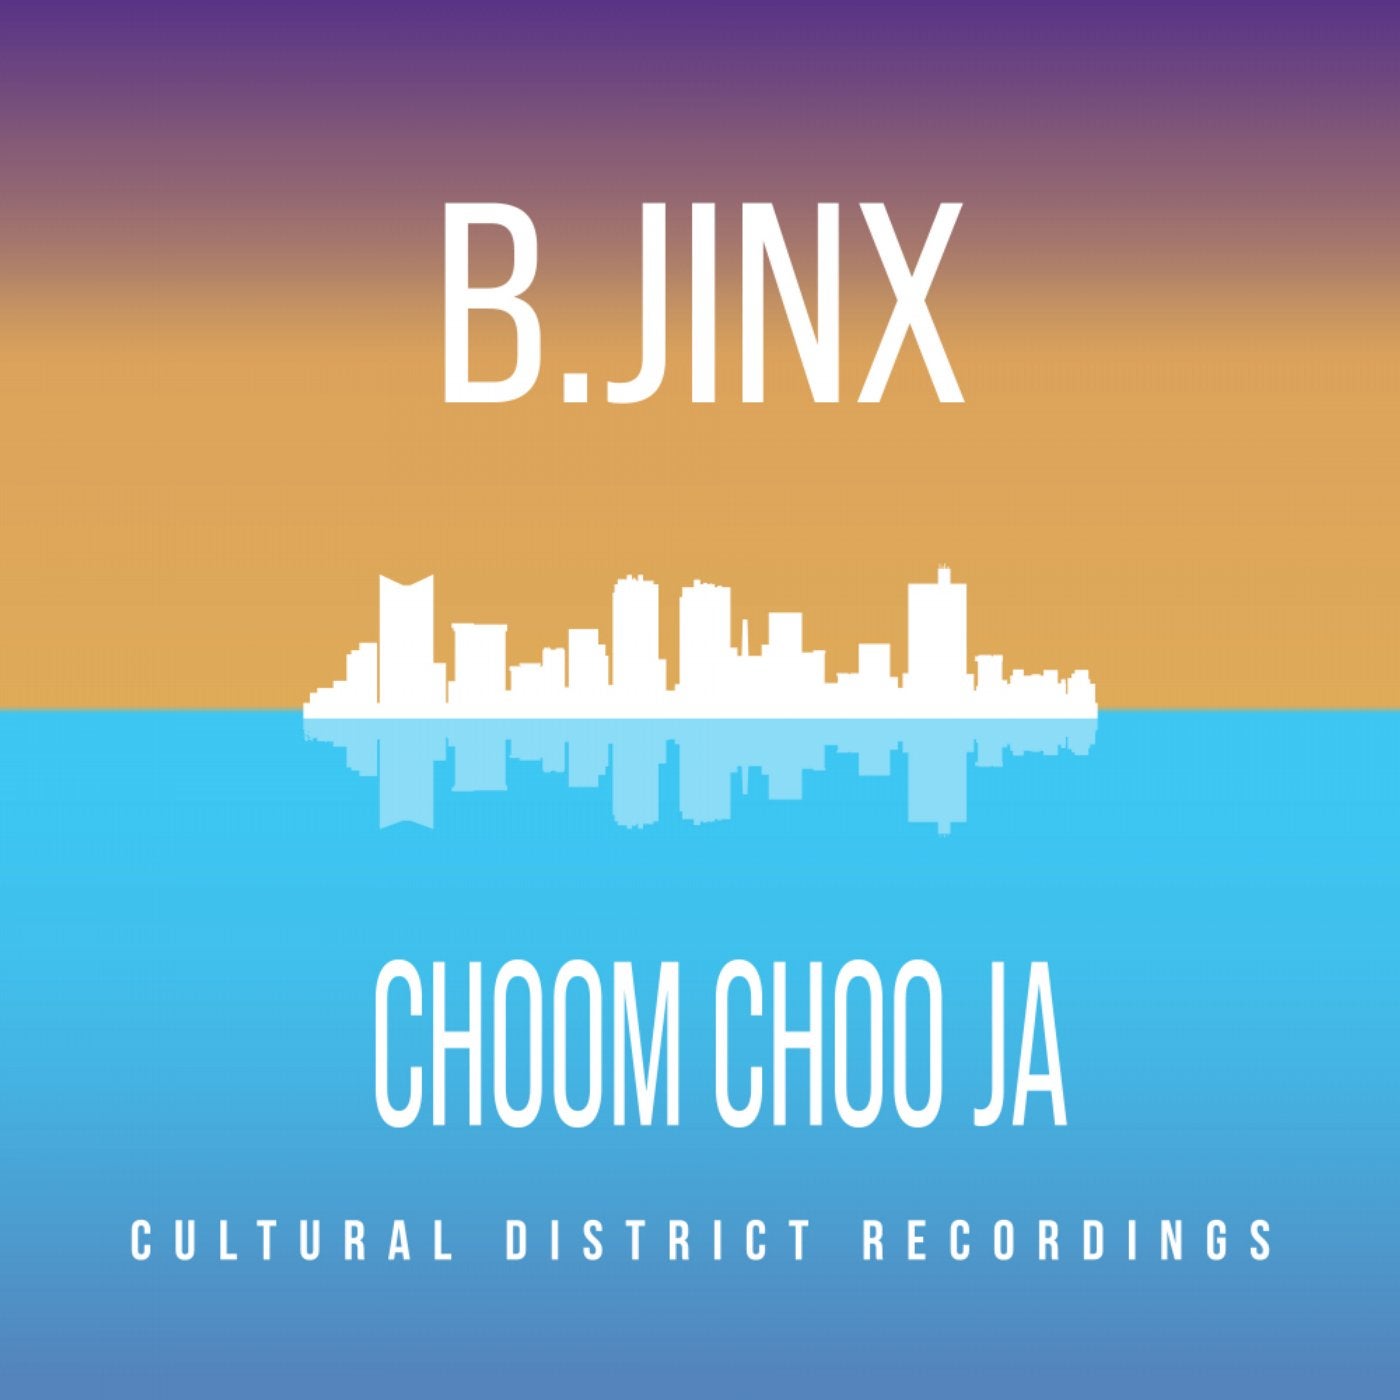 Choom Choo Ja